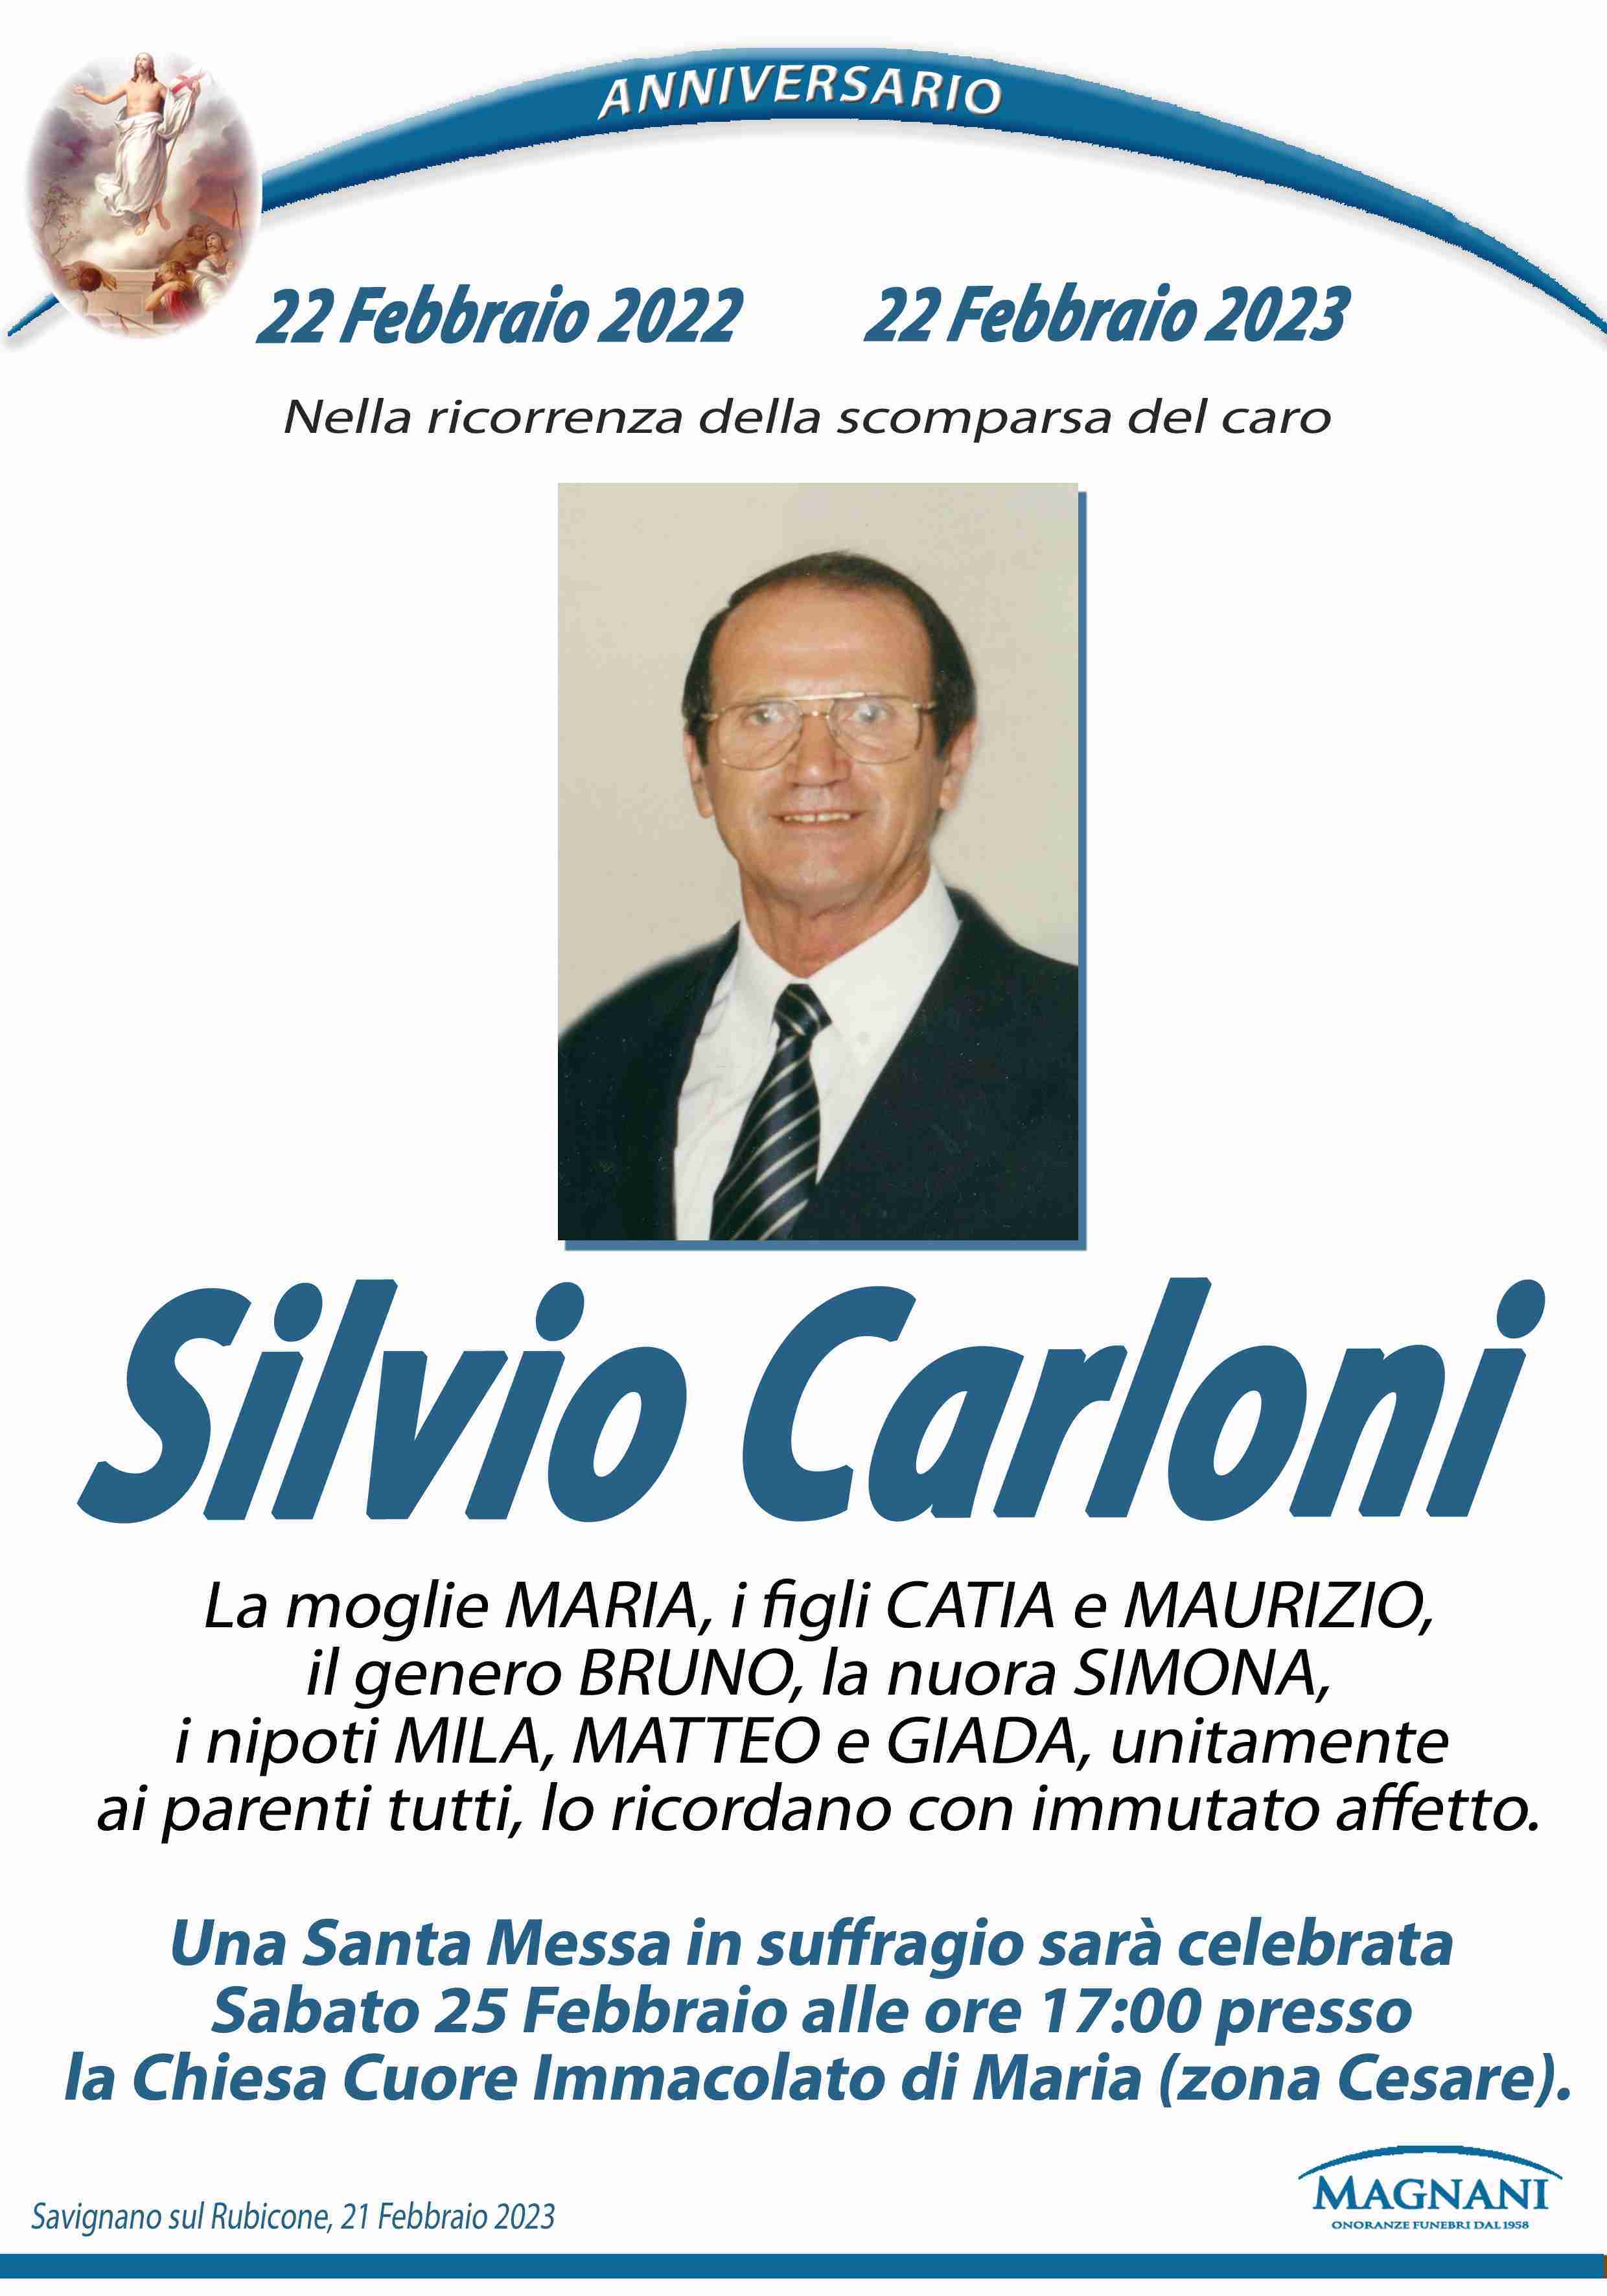 Silvio Carloni